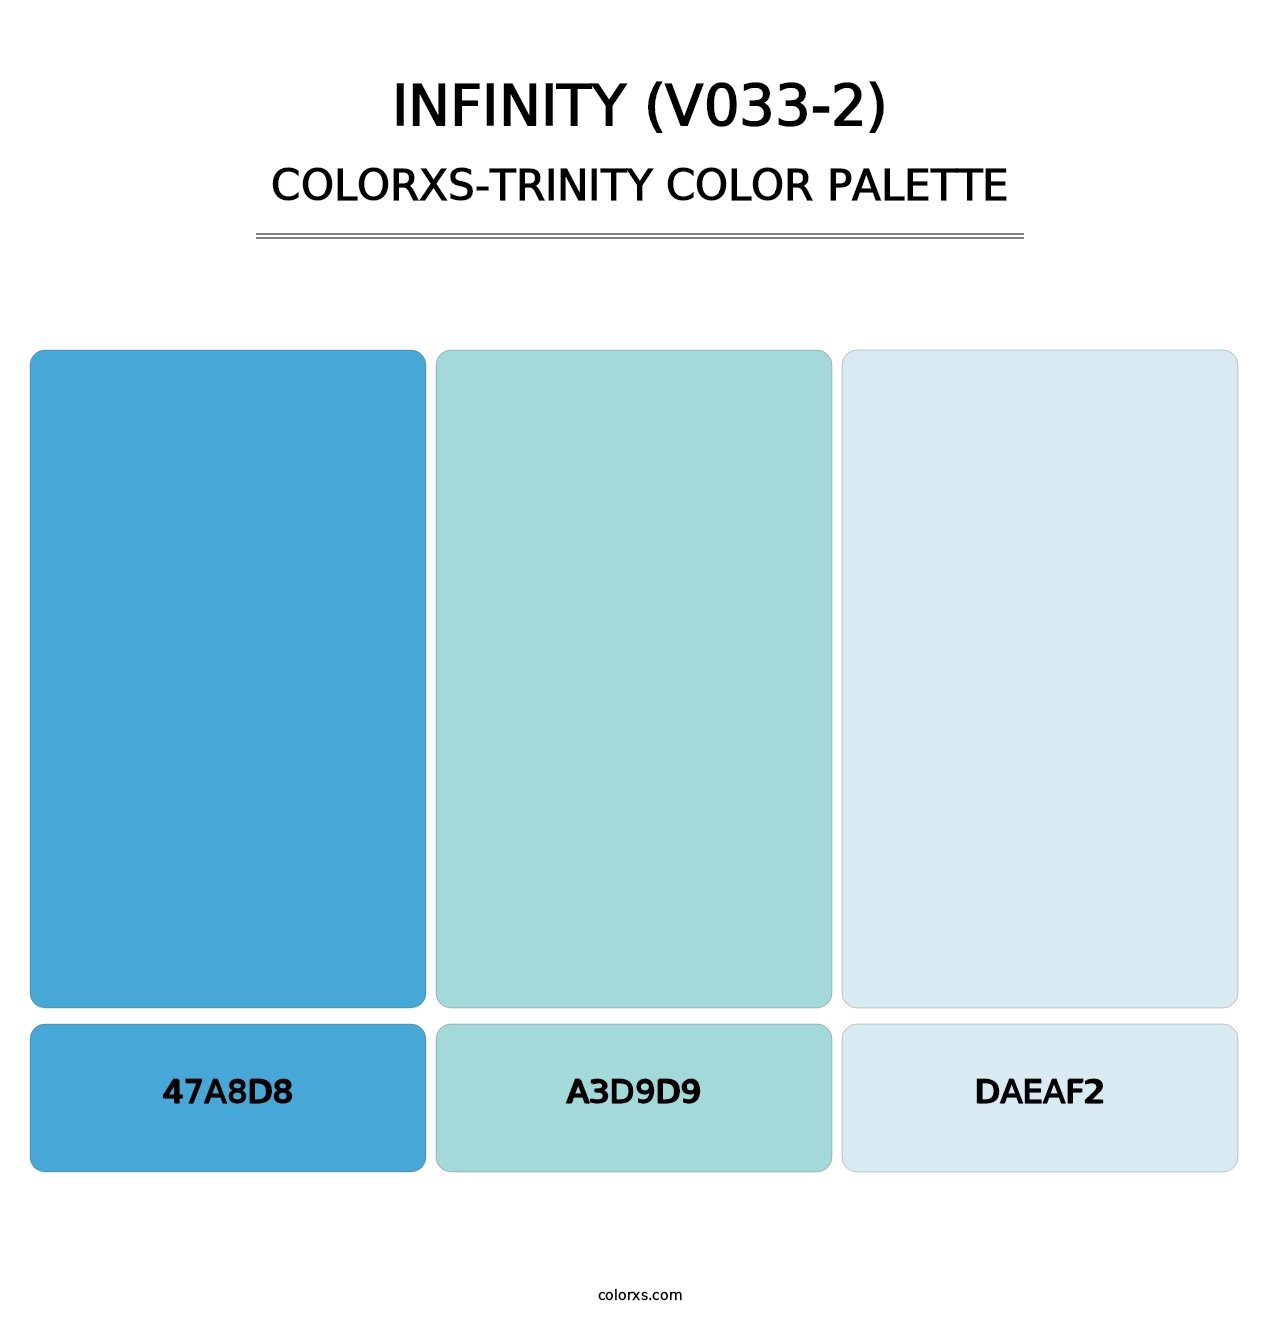 Infinity (V033-2) - Colorxs Trinity Palette